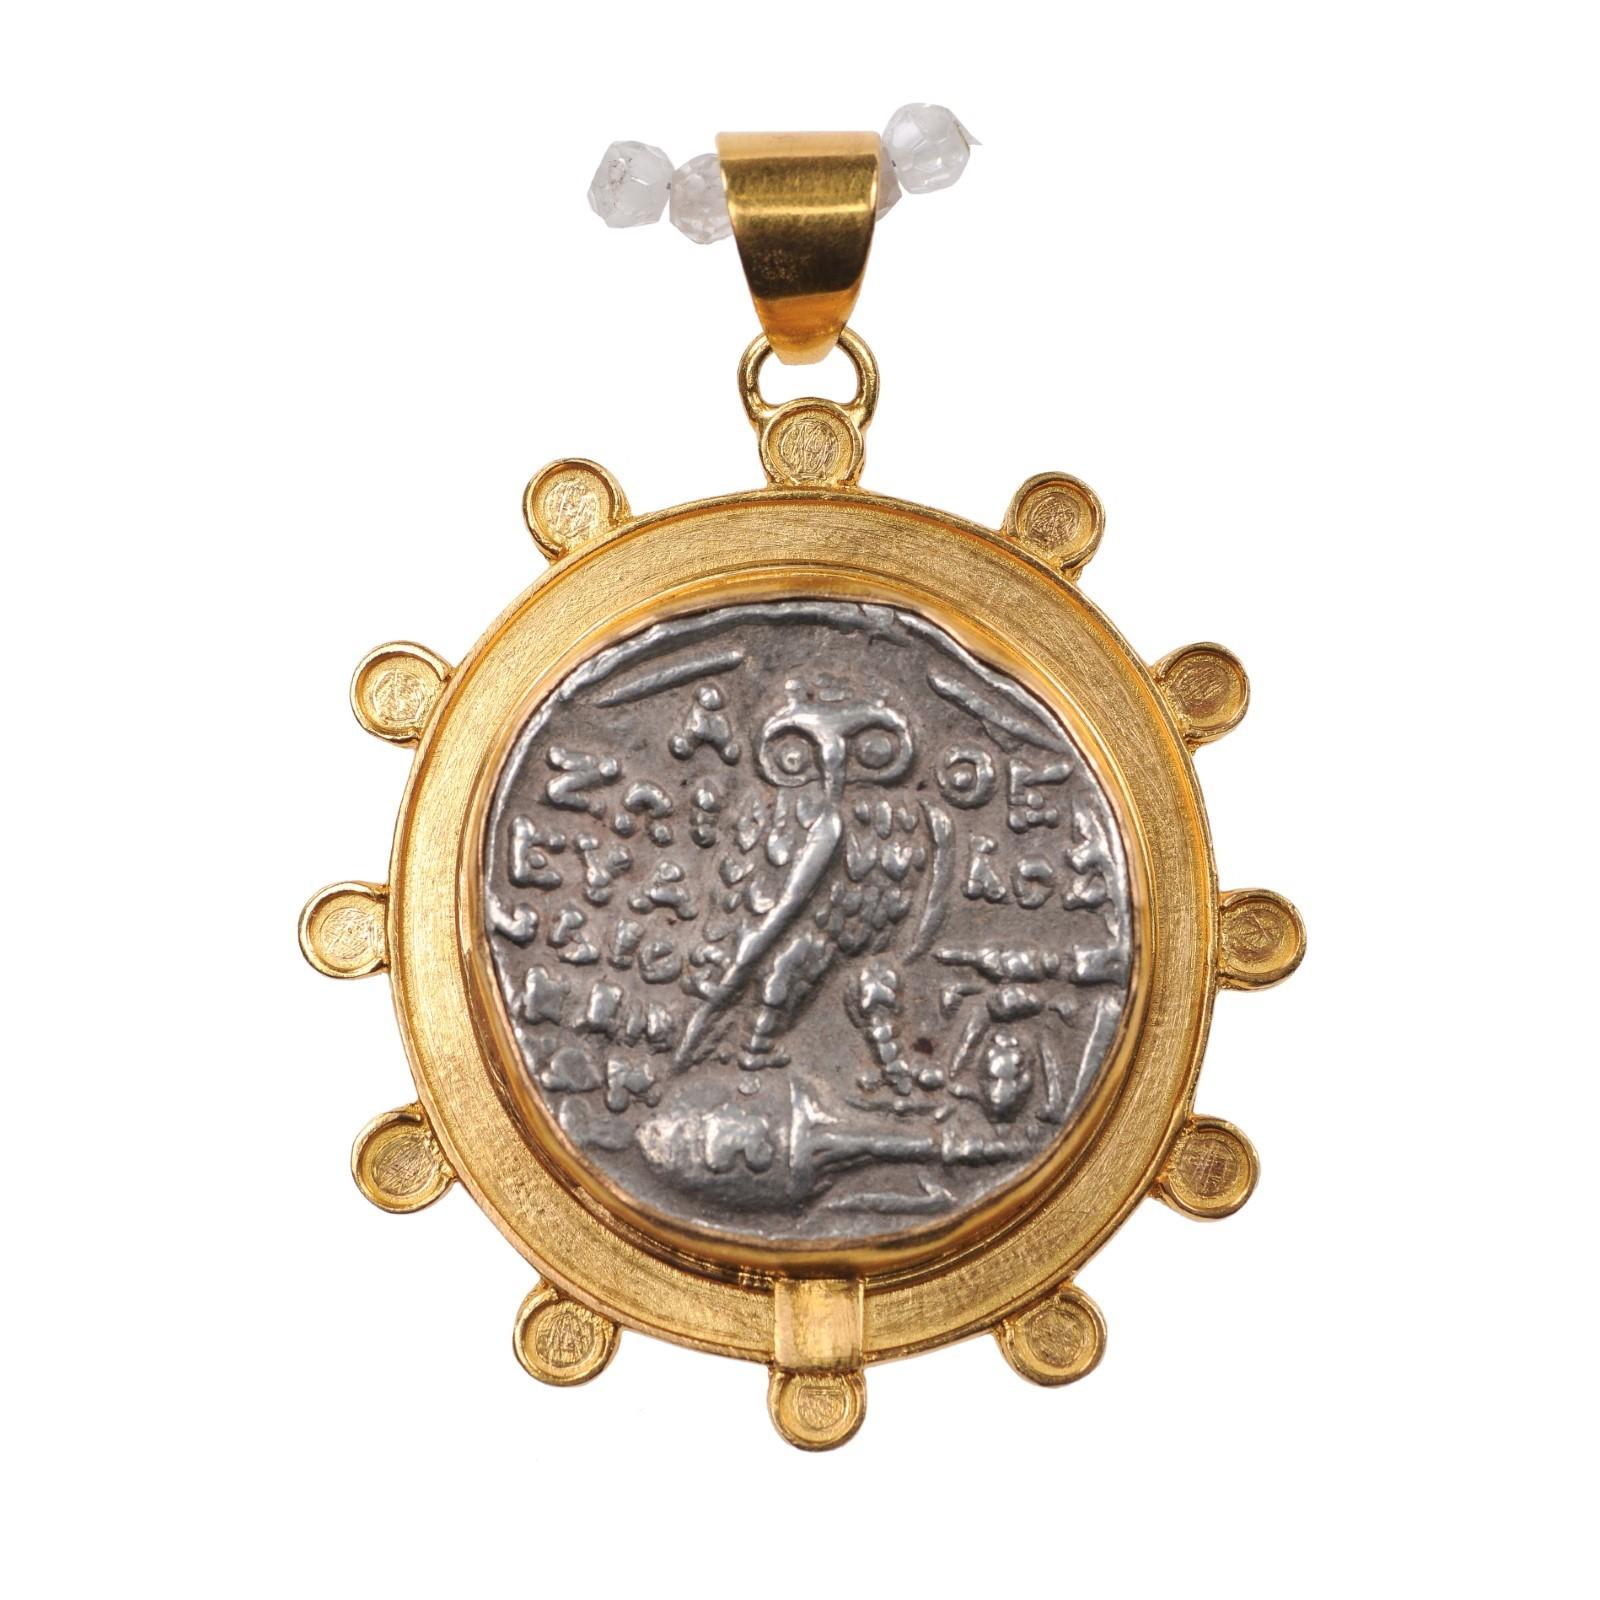 Authentique pièce grecque en argent d'Athènes représentant Athéna et le hibou (vers 109/108 av. J.-C.), sertie dans un chaton en or 22 kt personnalisé, orné d'accents ronds sur le pourtour et d'une attache en or 22 kt. L'avers, ou le recto, de cette